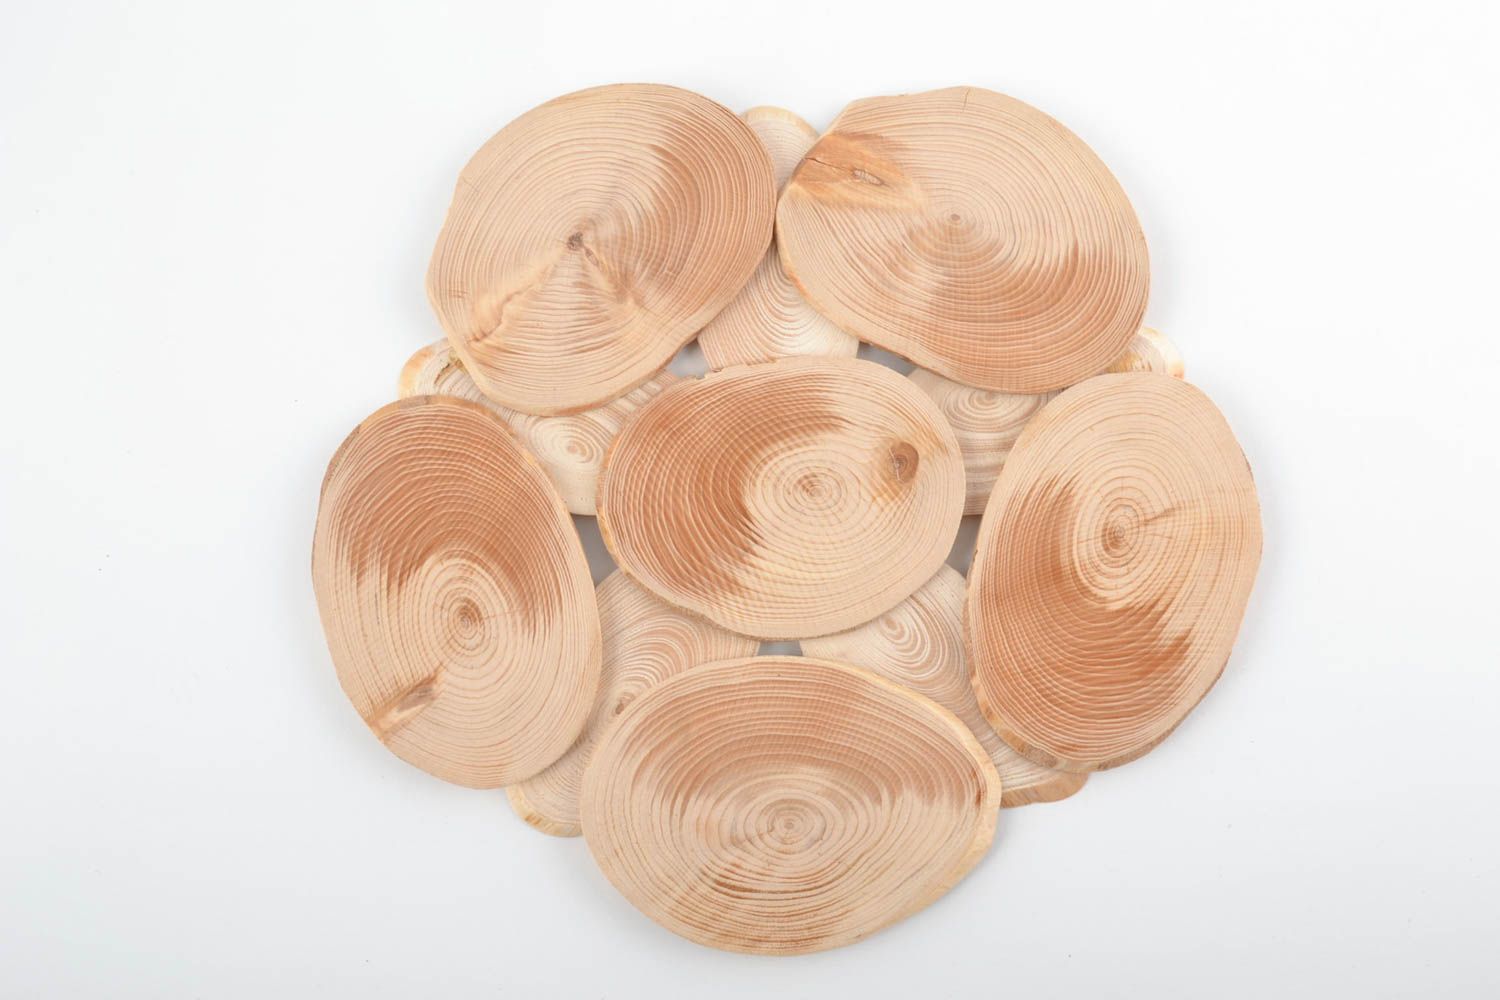 Подставка для кастрюль и другой горячей посуды деревянная круглая ручной работы фото 2